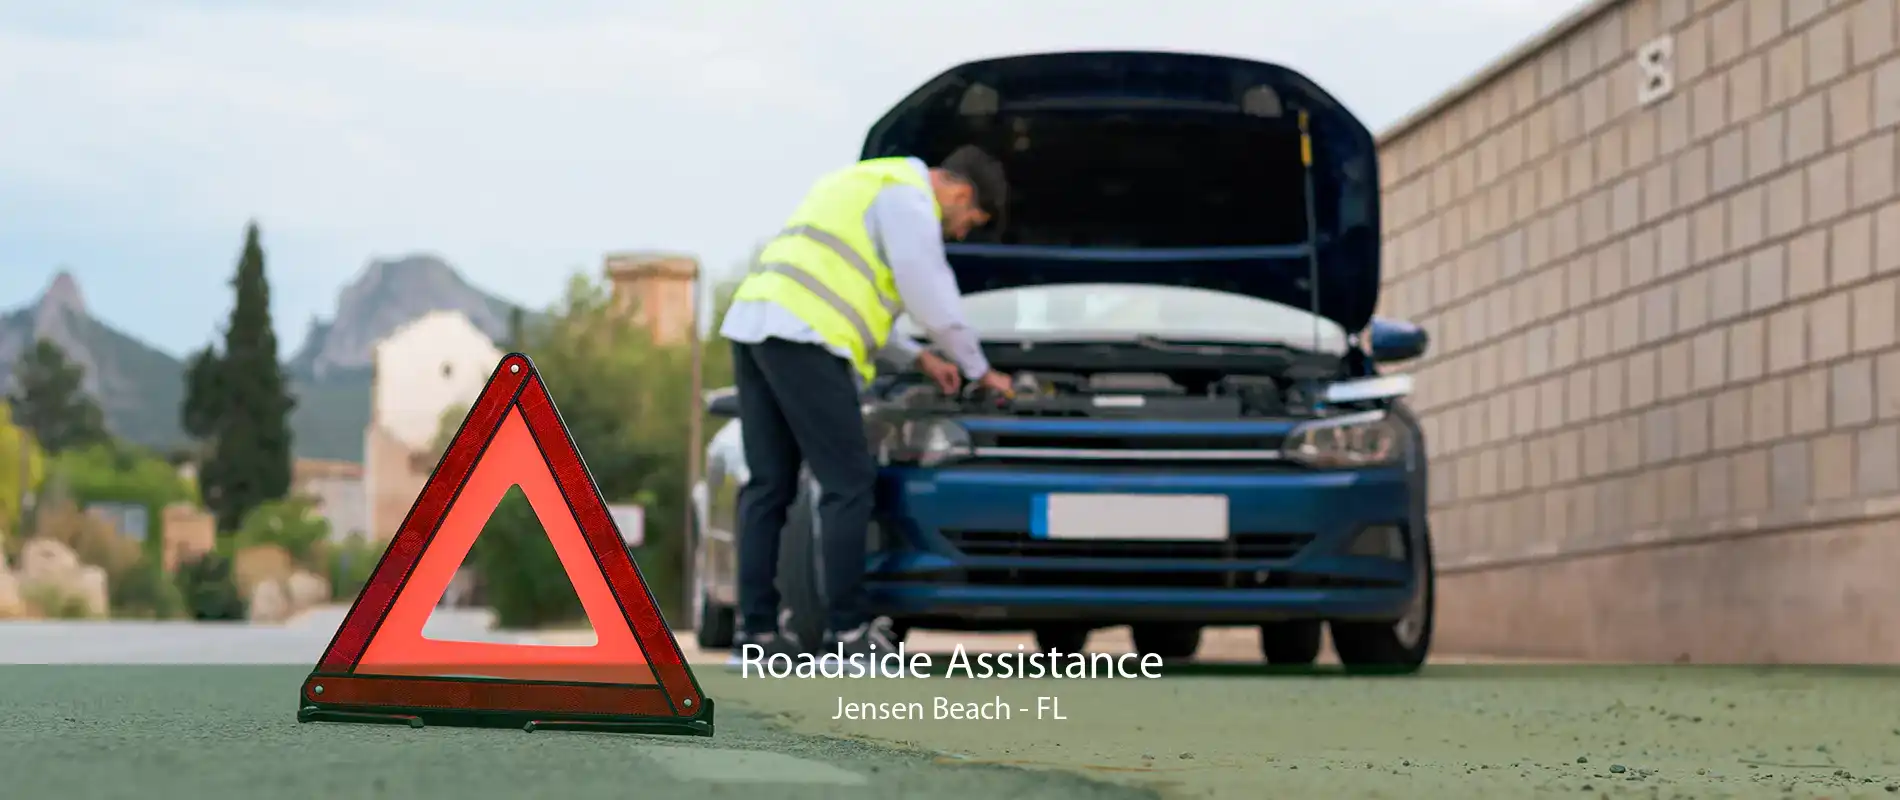 Roadside Assistance Jensen Beach - FL